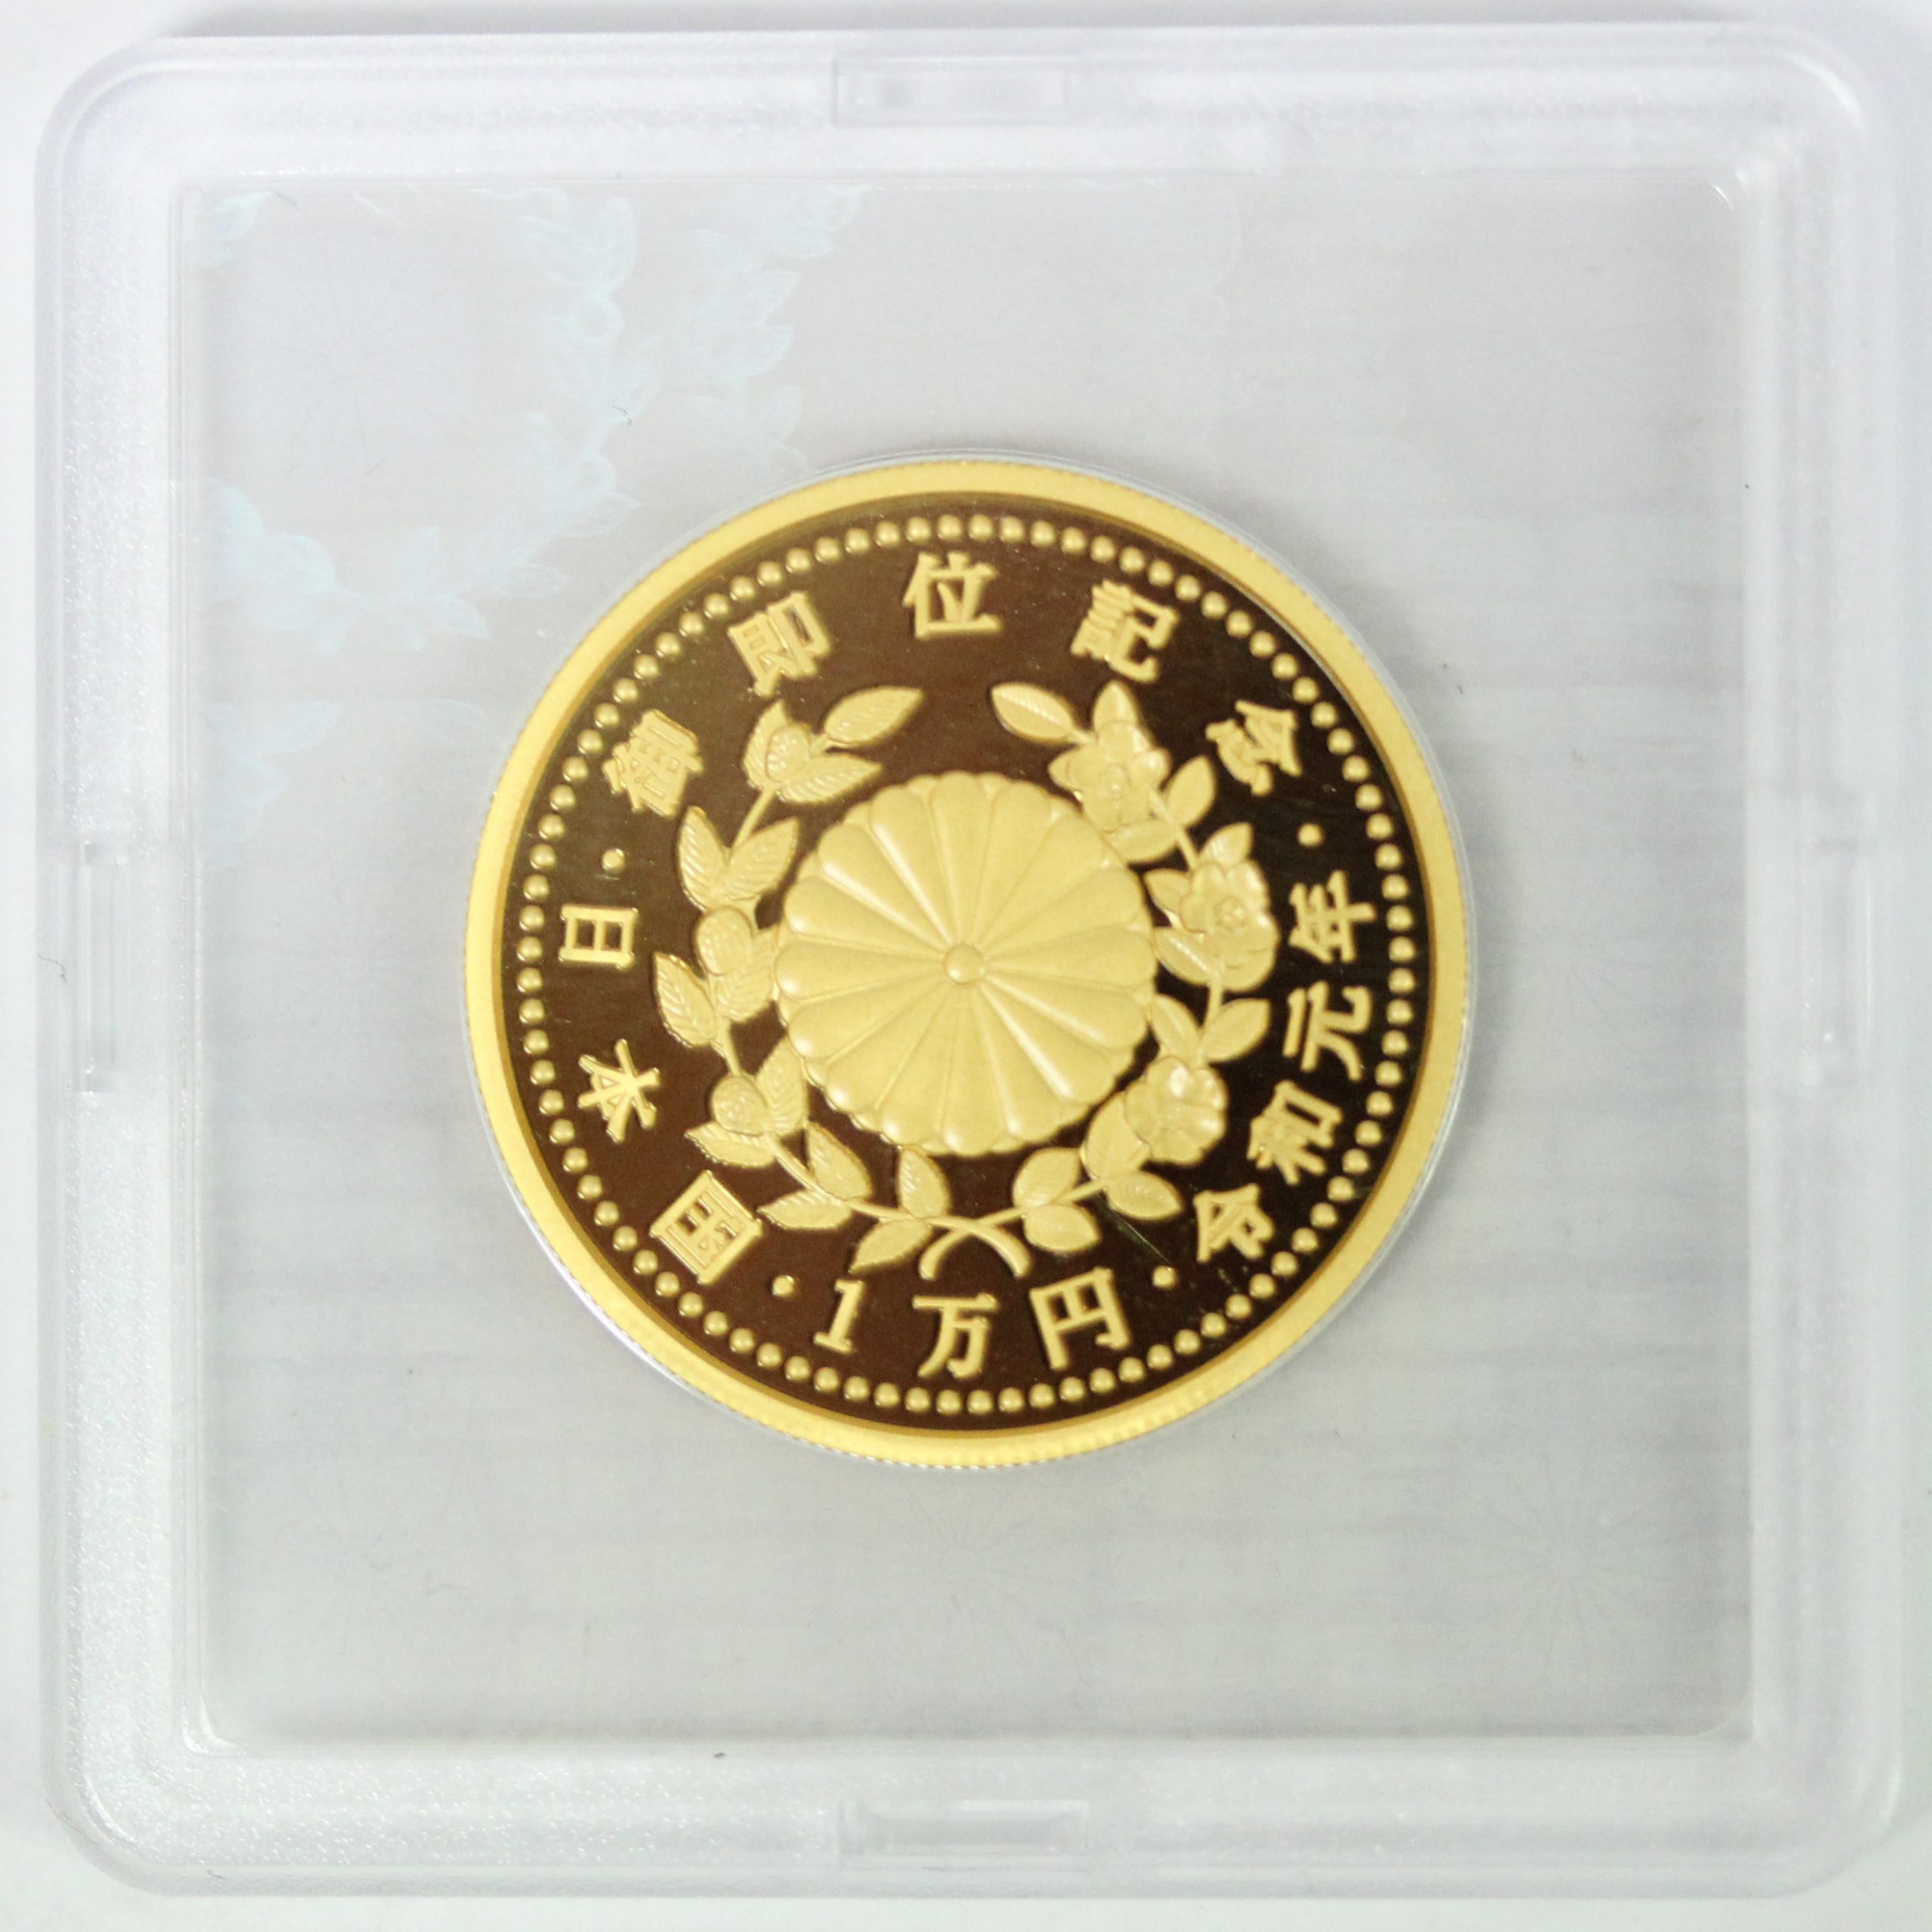 天皇陛下御即位記念 10,000円金貨 令和元年 古銭 コイン 一万円 金貨 